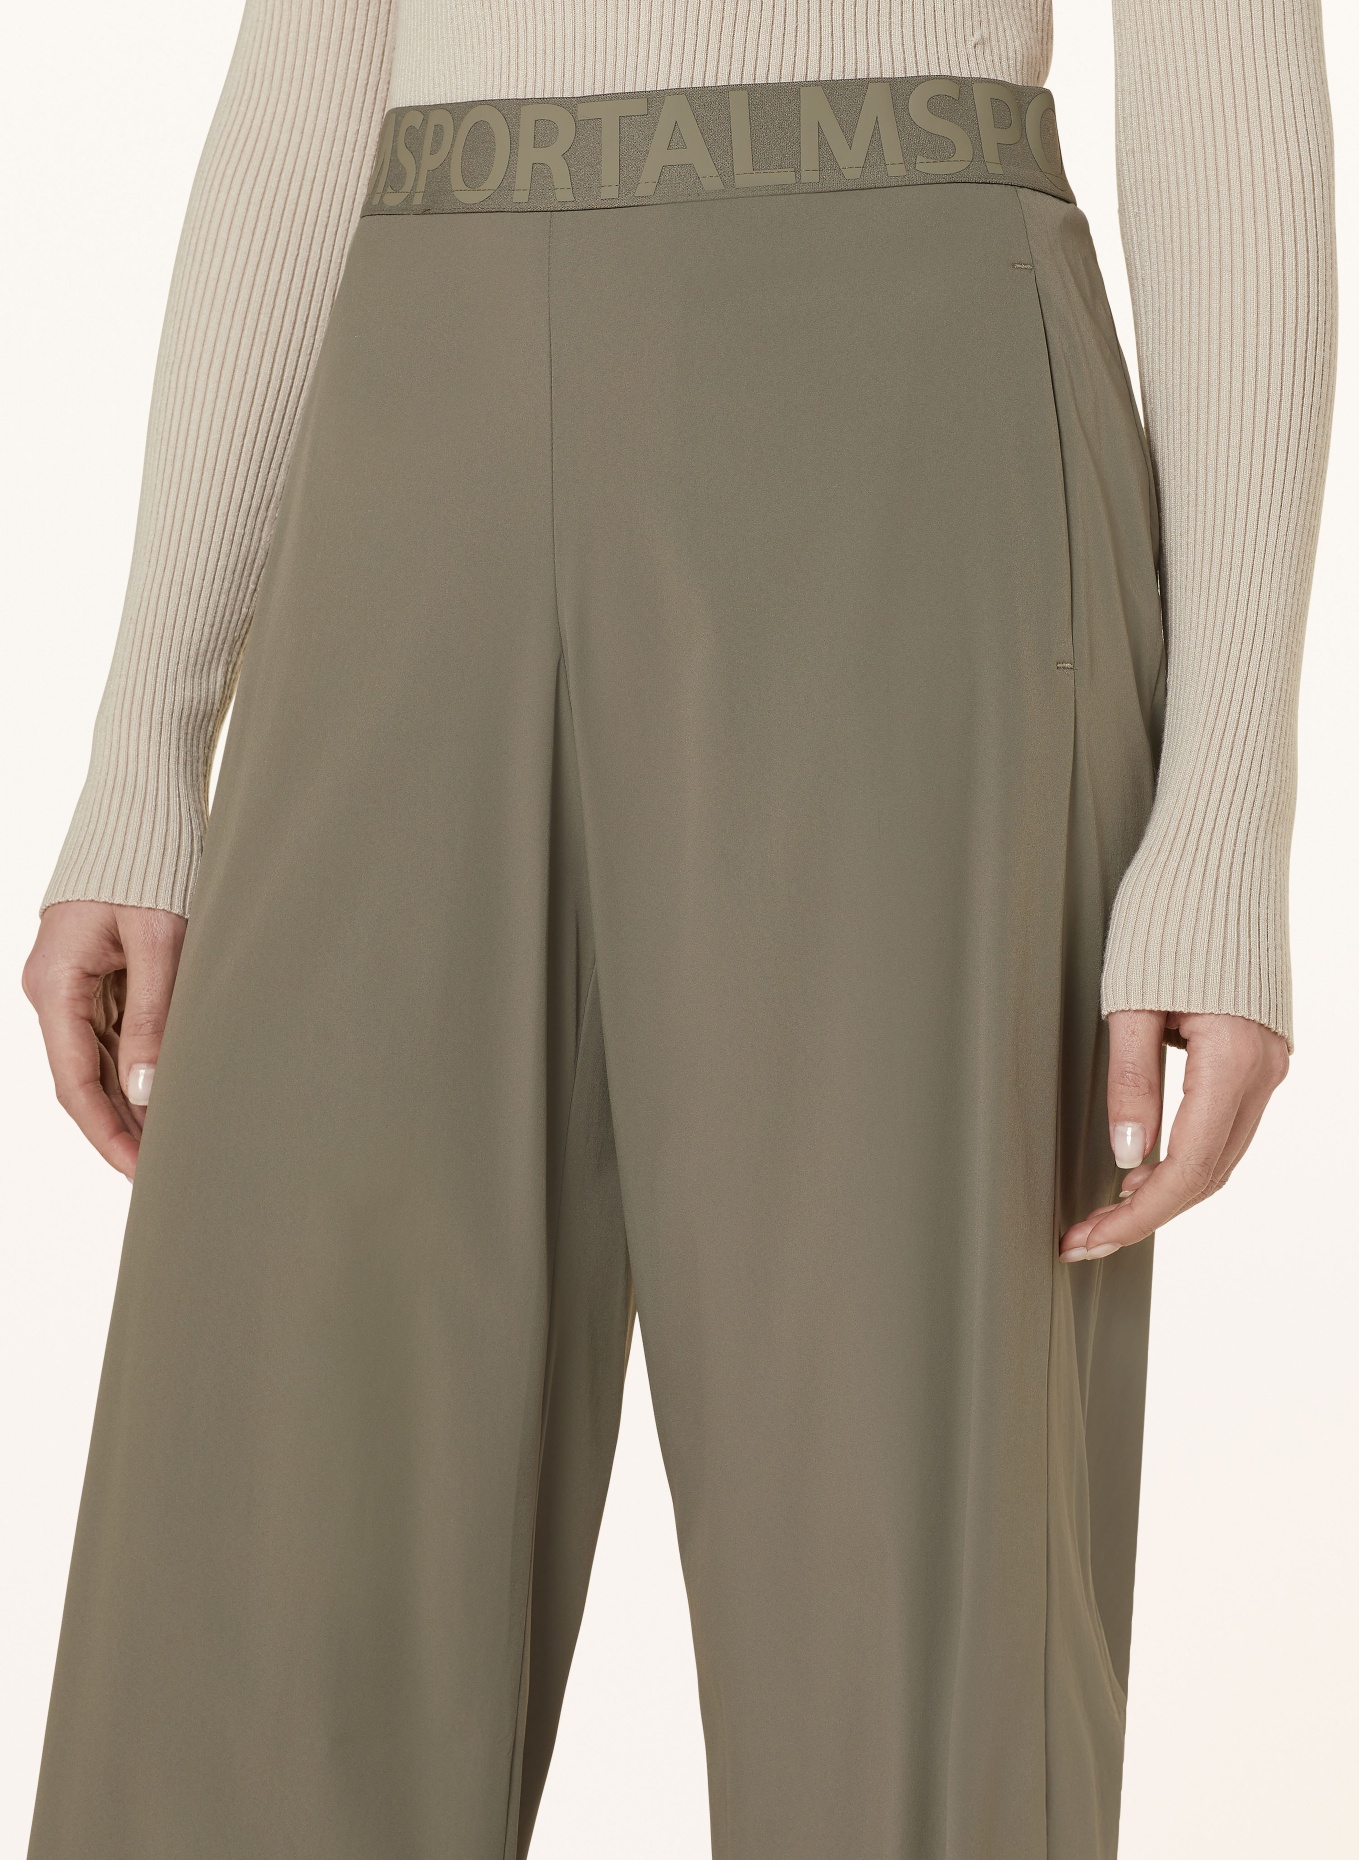 ULLI EHRLICH SPORTALM Trousers, Color: KHAKI (Image 5)